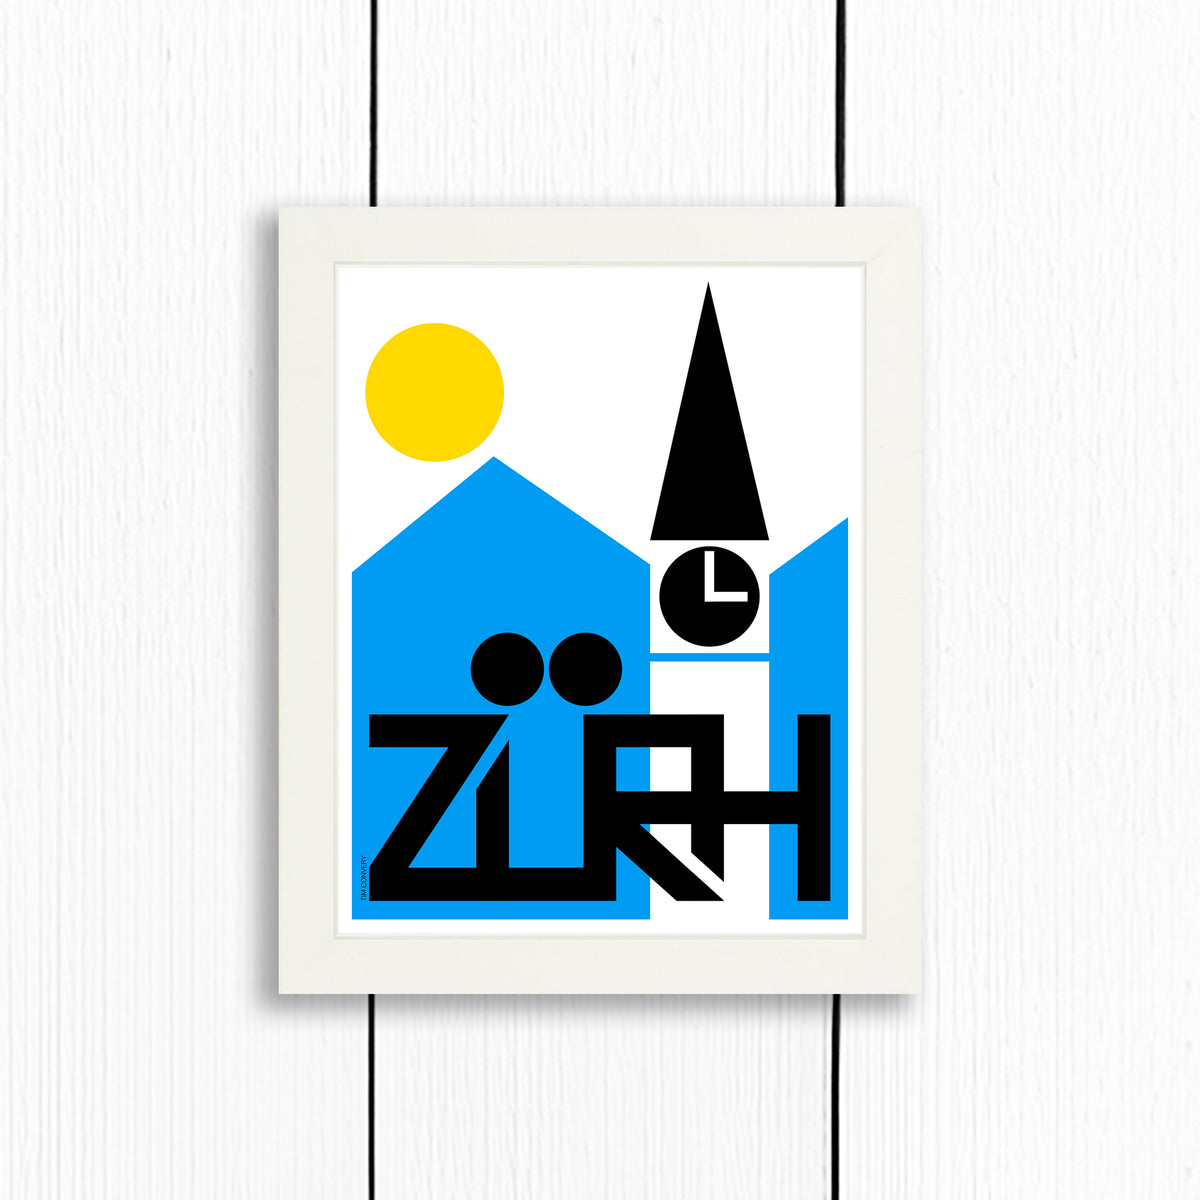 ZURICH / PRINT